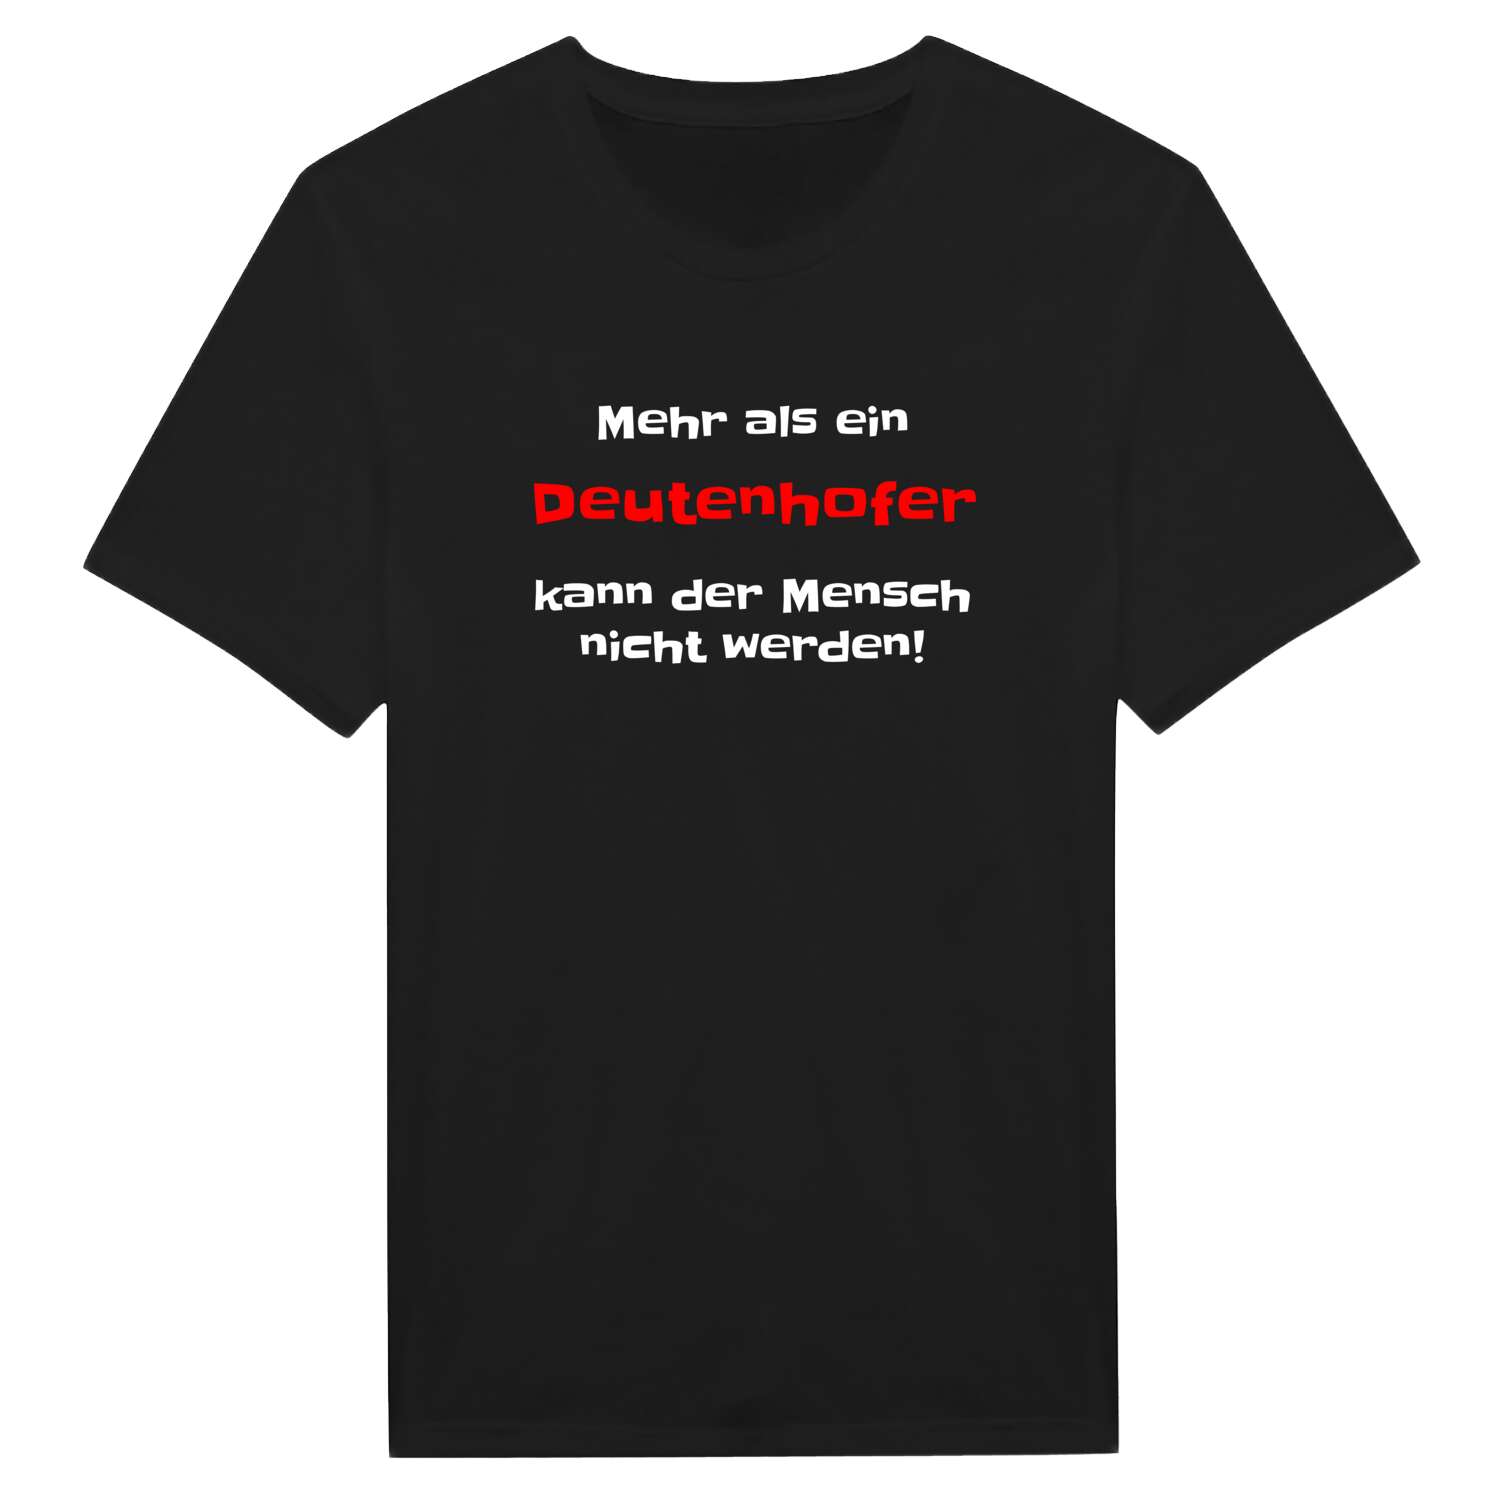 Deutenhof T-Shirt »Mehr als ein«